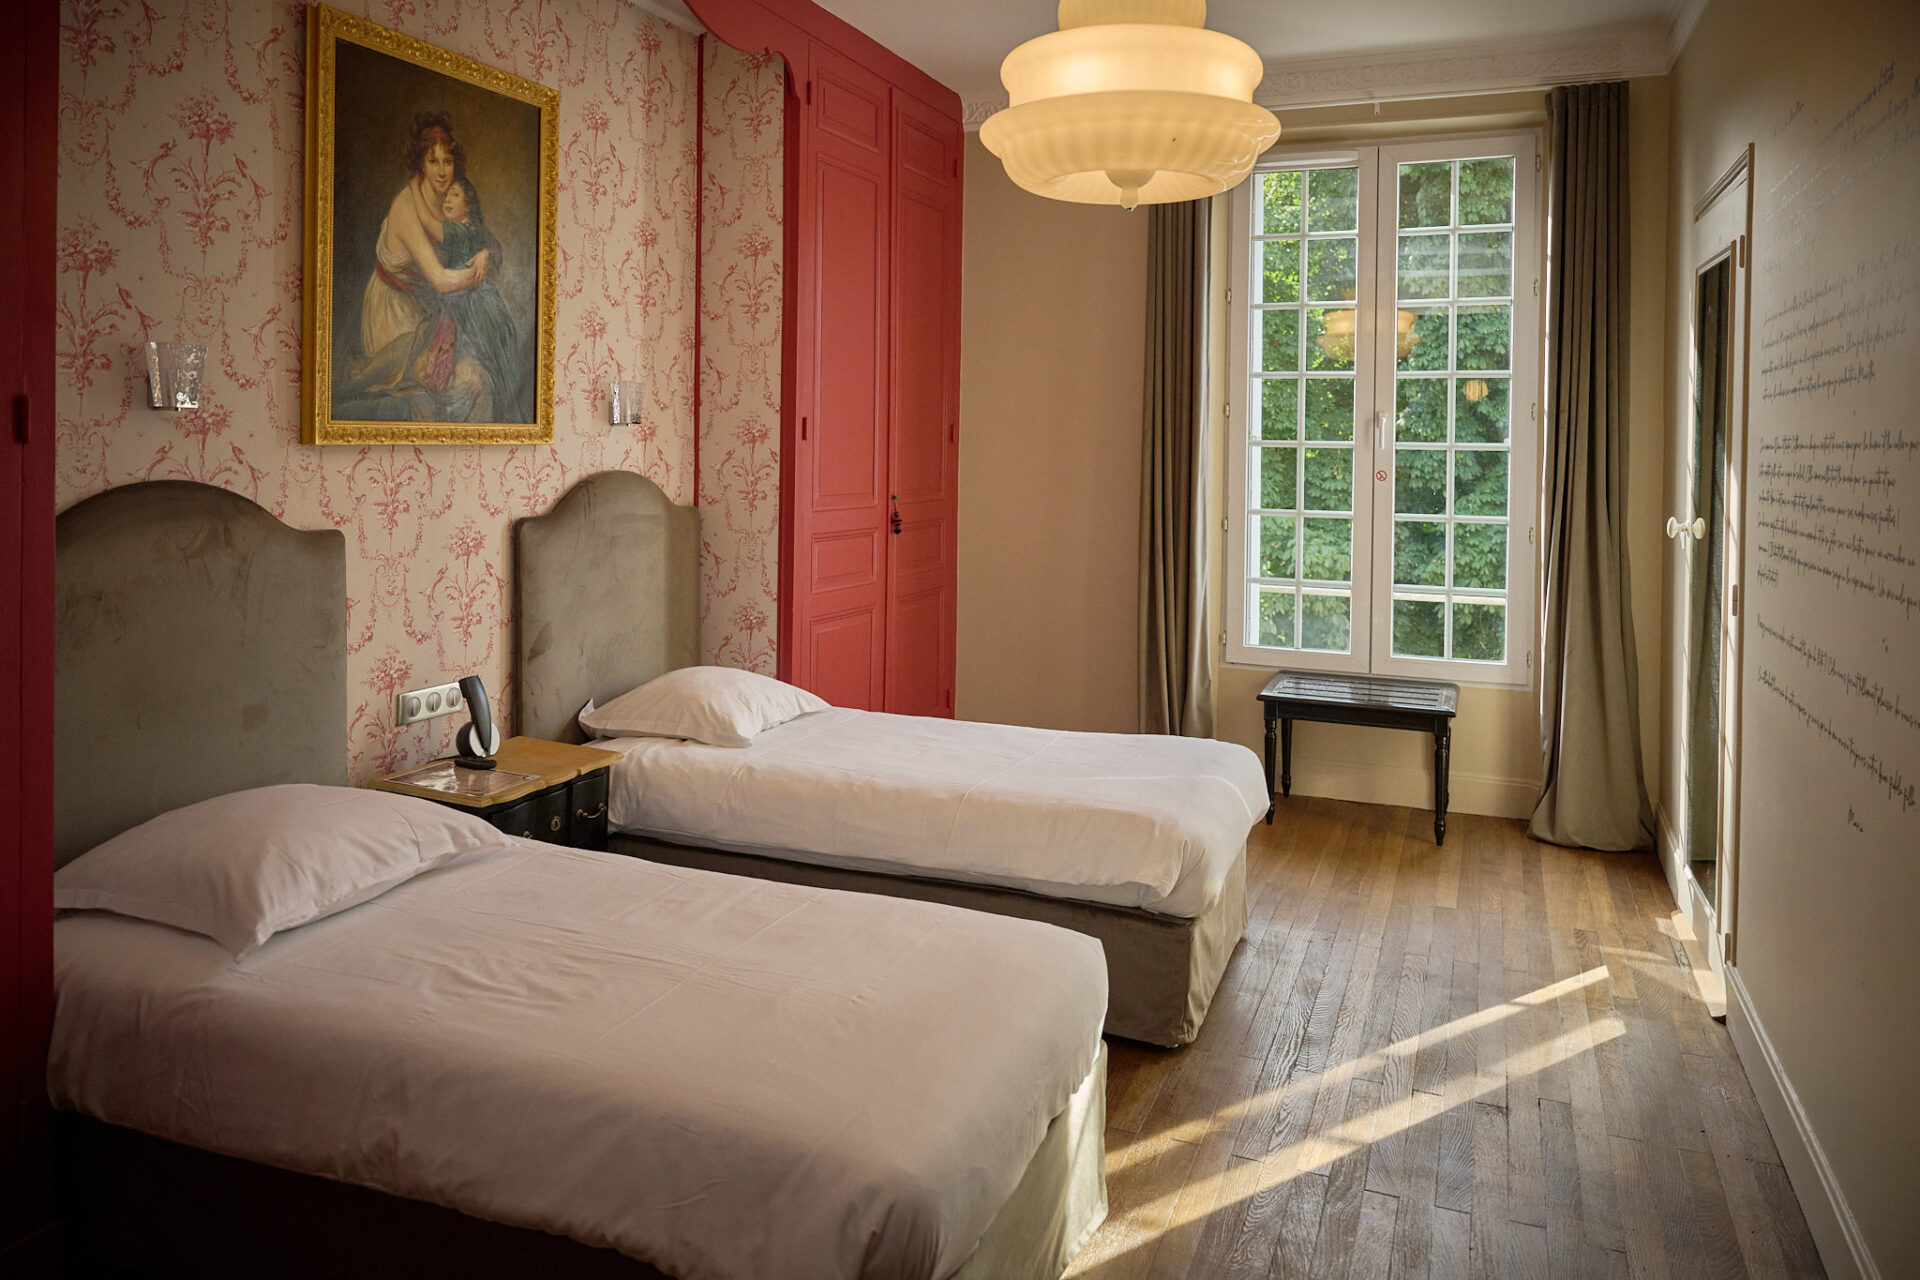 A la recherche d'un gite, d'une auberge, d'un hotel, l'hostellerie du château du Bois Guibert vous accueille. De nombreux chapitres se sont inscris à travers nos murs...entre histoire et modernité. Découvrez le Chapitre 1 - Chambre luxe & confort !